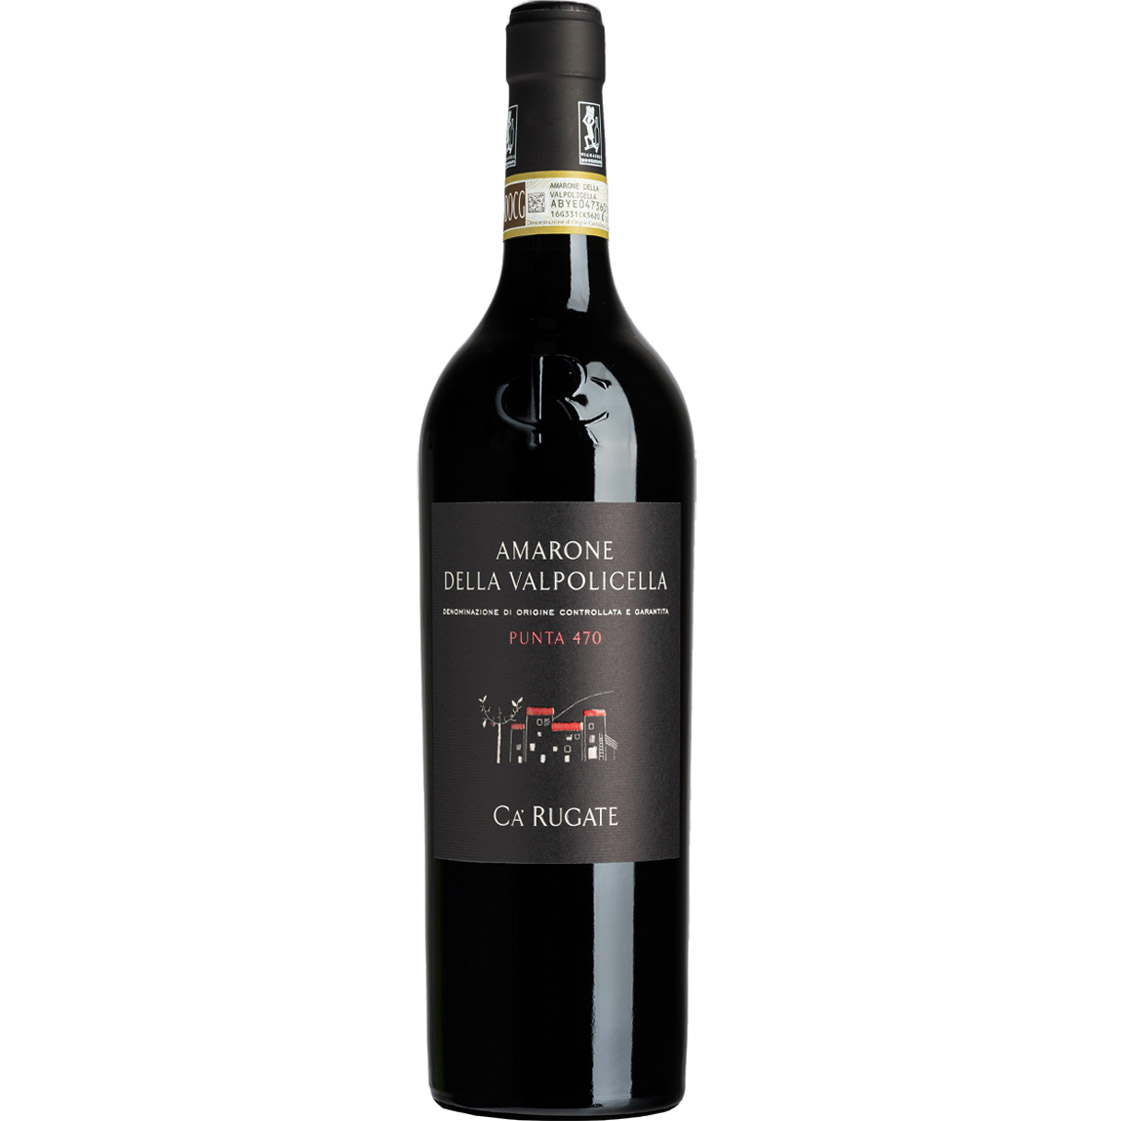 Вино Ca' Rugate Amarone della Valpolicella Punta 470 DOCG 2017 красное сухое 0.375 л - фото 1